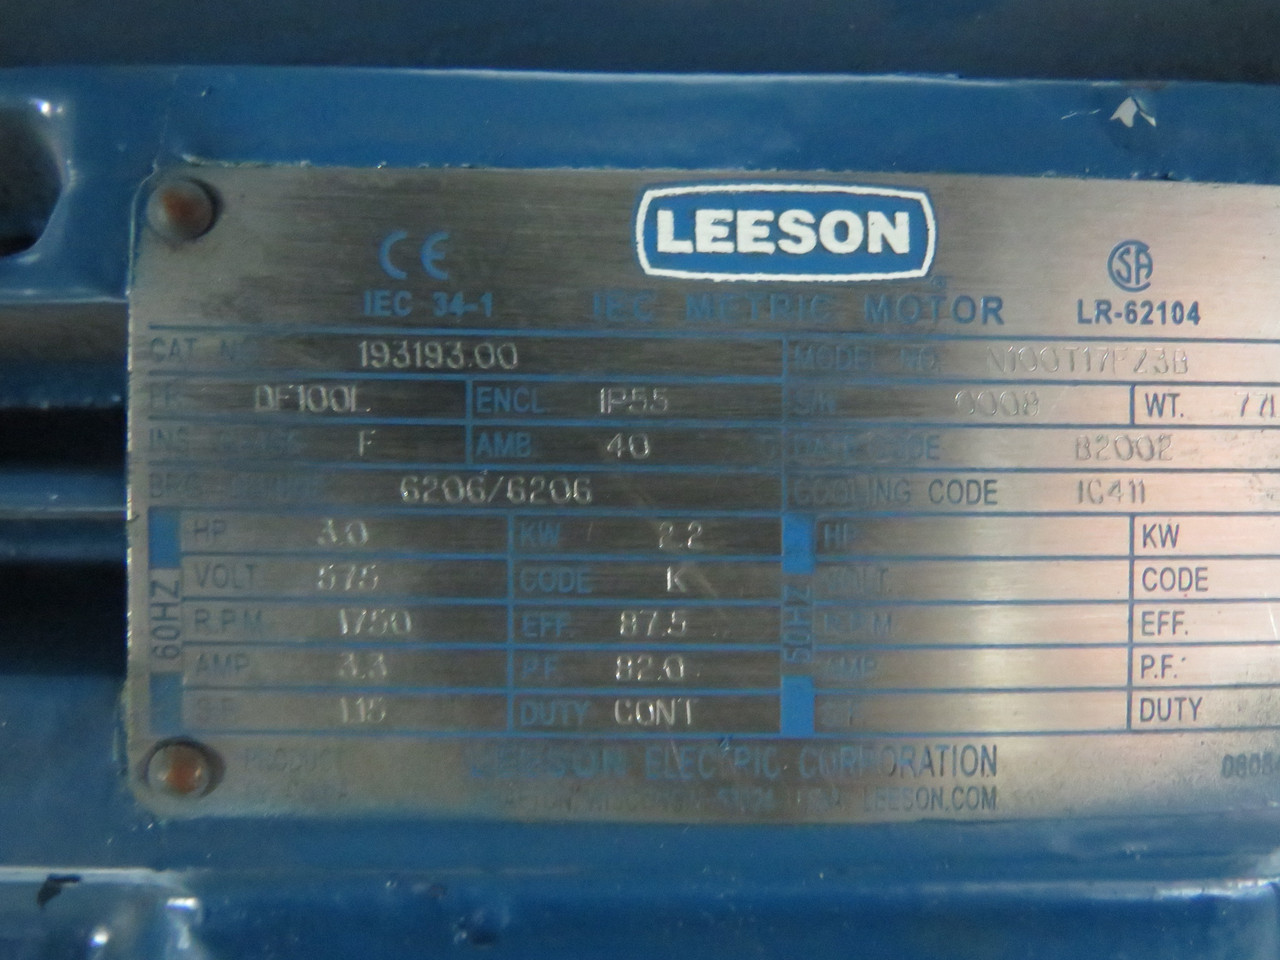 Leeson N100T17FZ3B 3.0HP 1750RPM 575V DF100L Fr IP55 3.3A 60Hz USED